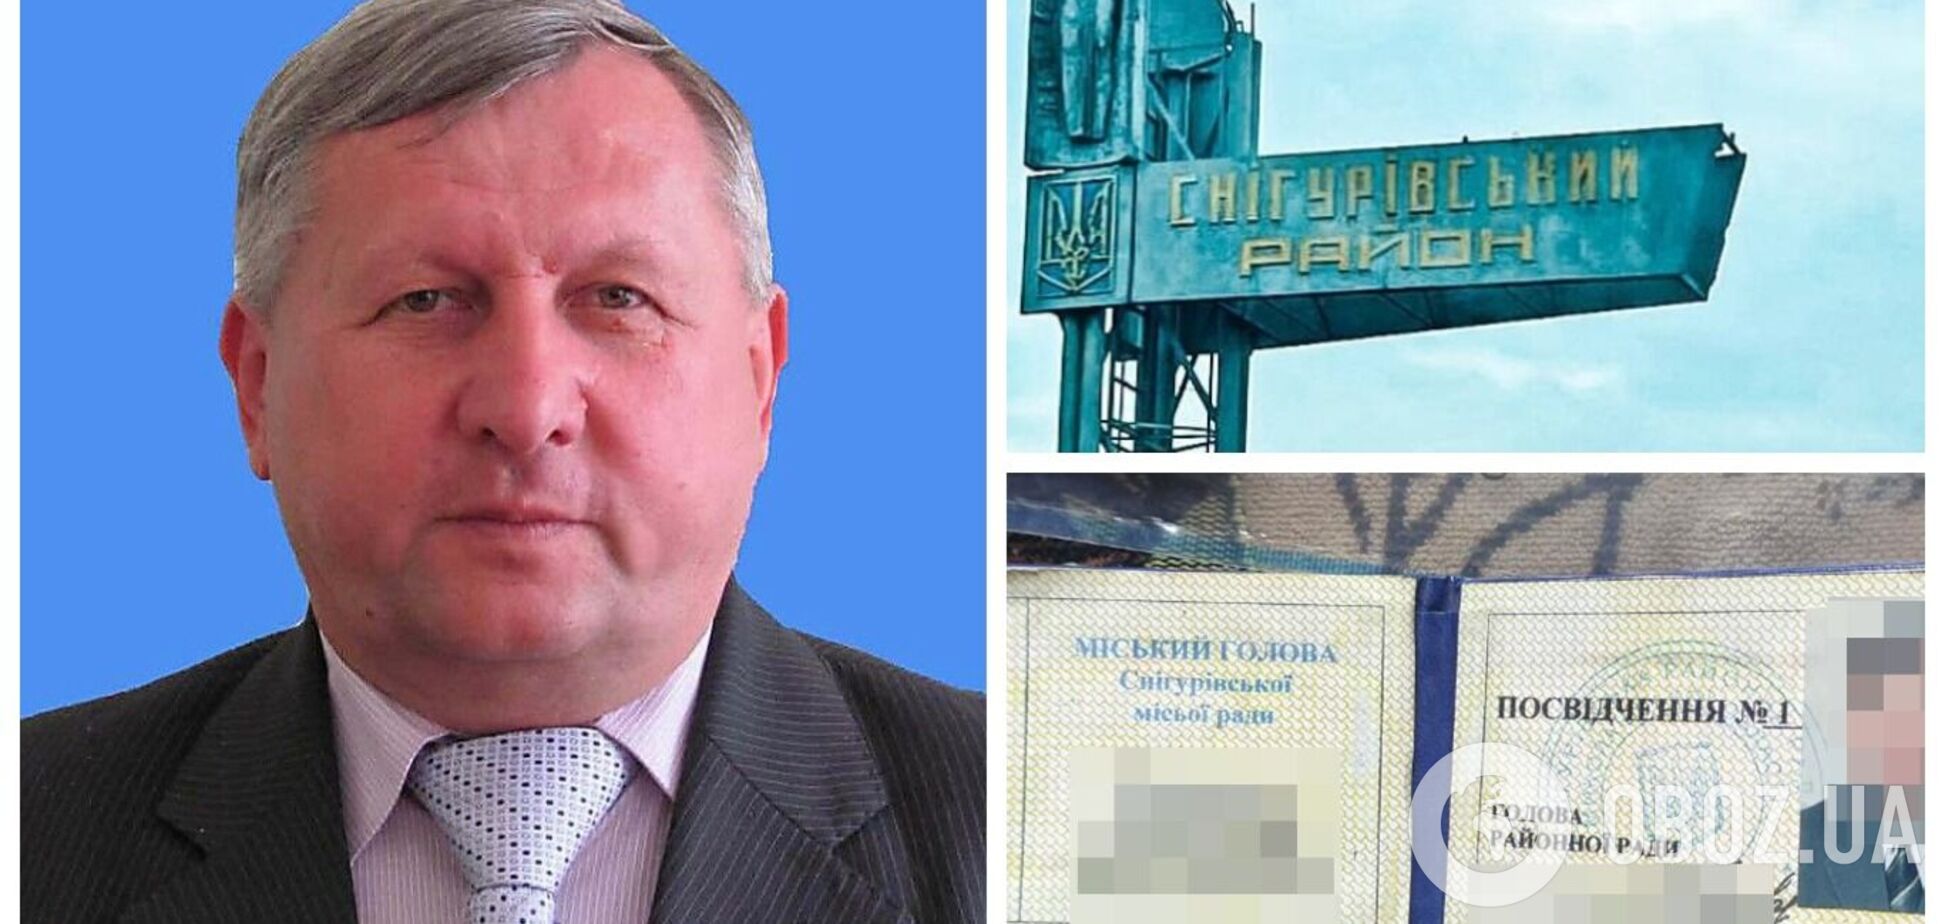 СБУ сообщила о подозрении экс-мэру Снигиревки, получившего должность от оккупантов